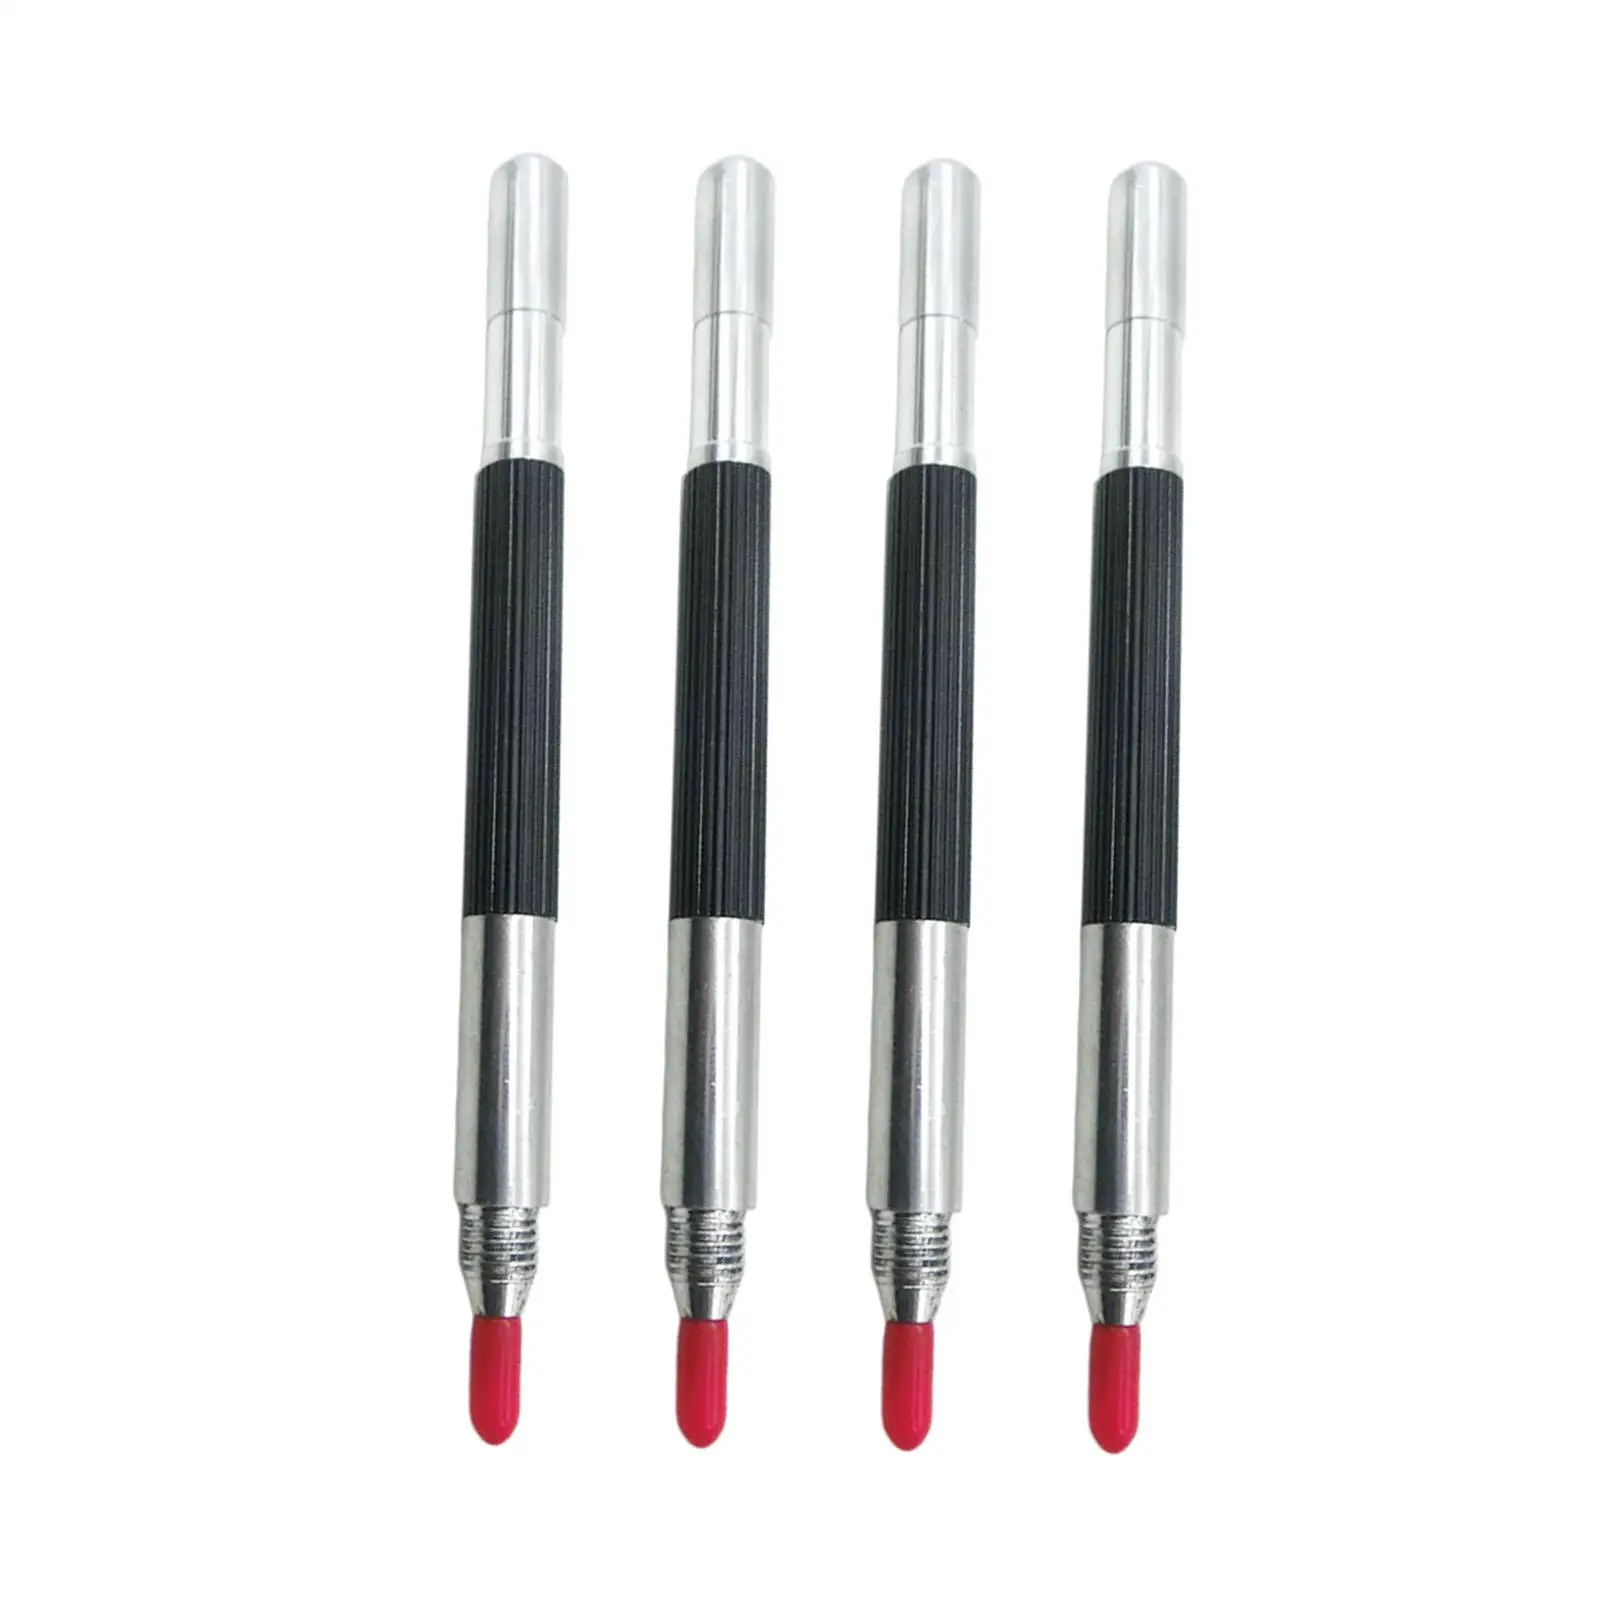 4 Pieces Engraving Pen Long Nib Double Head Tungsten Carbide Scribing Pens for Metal